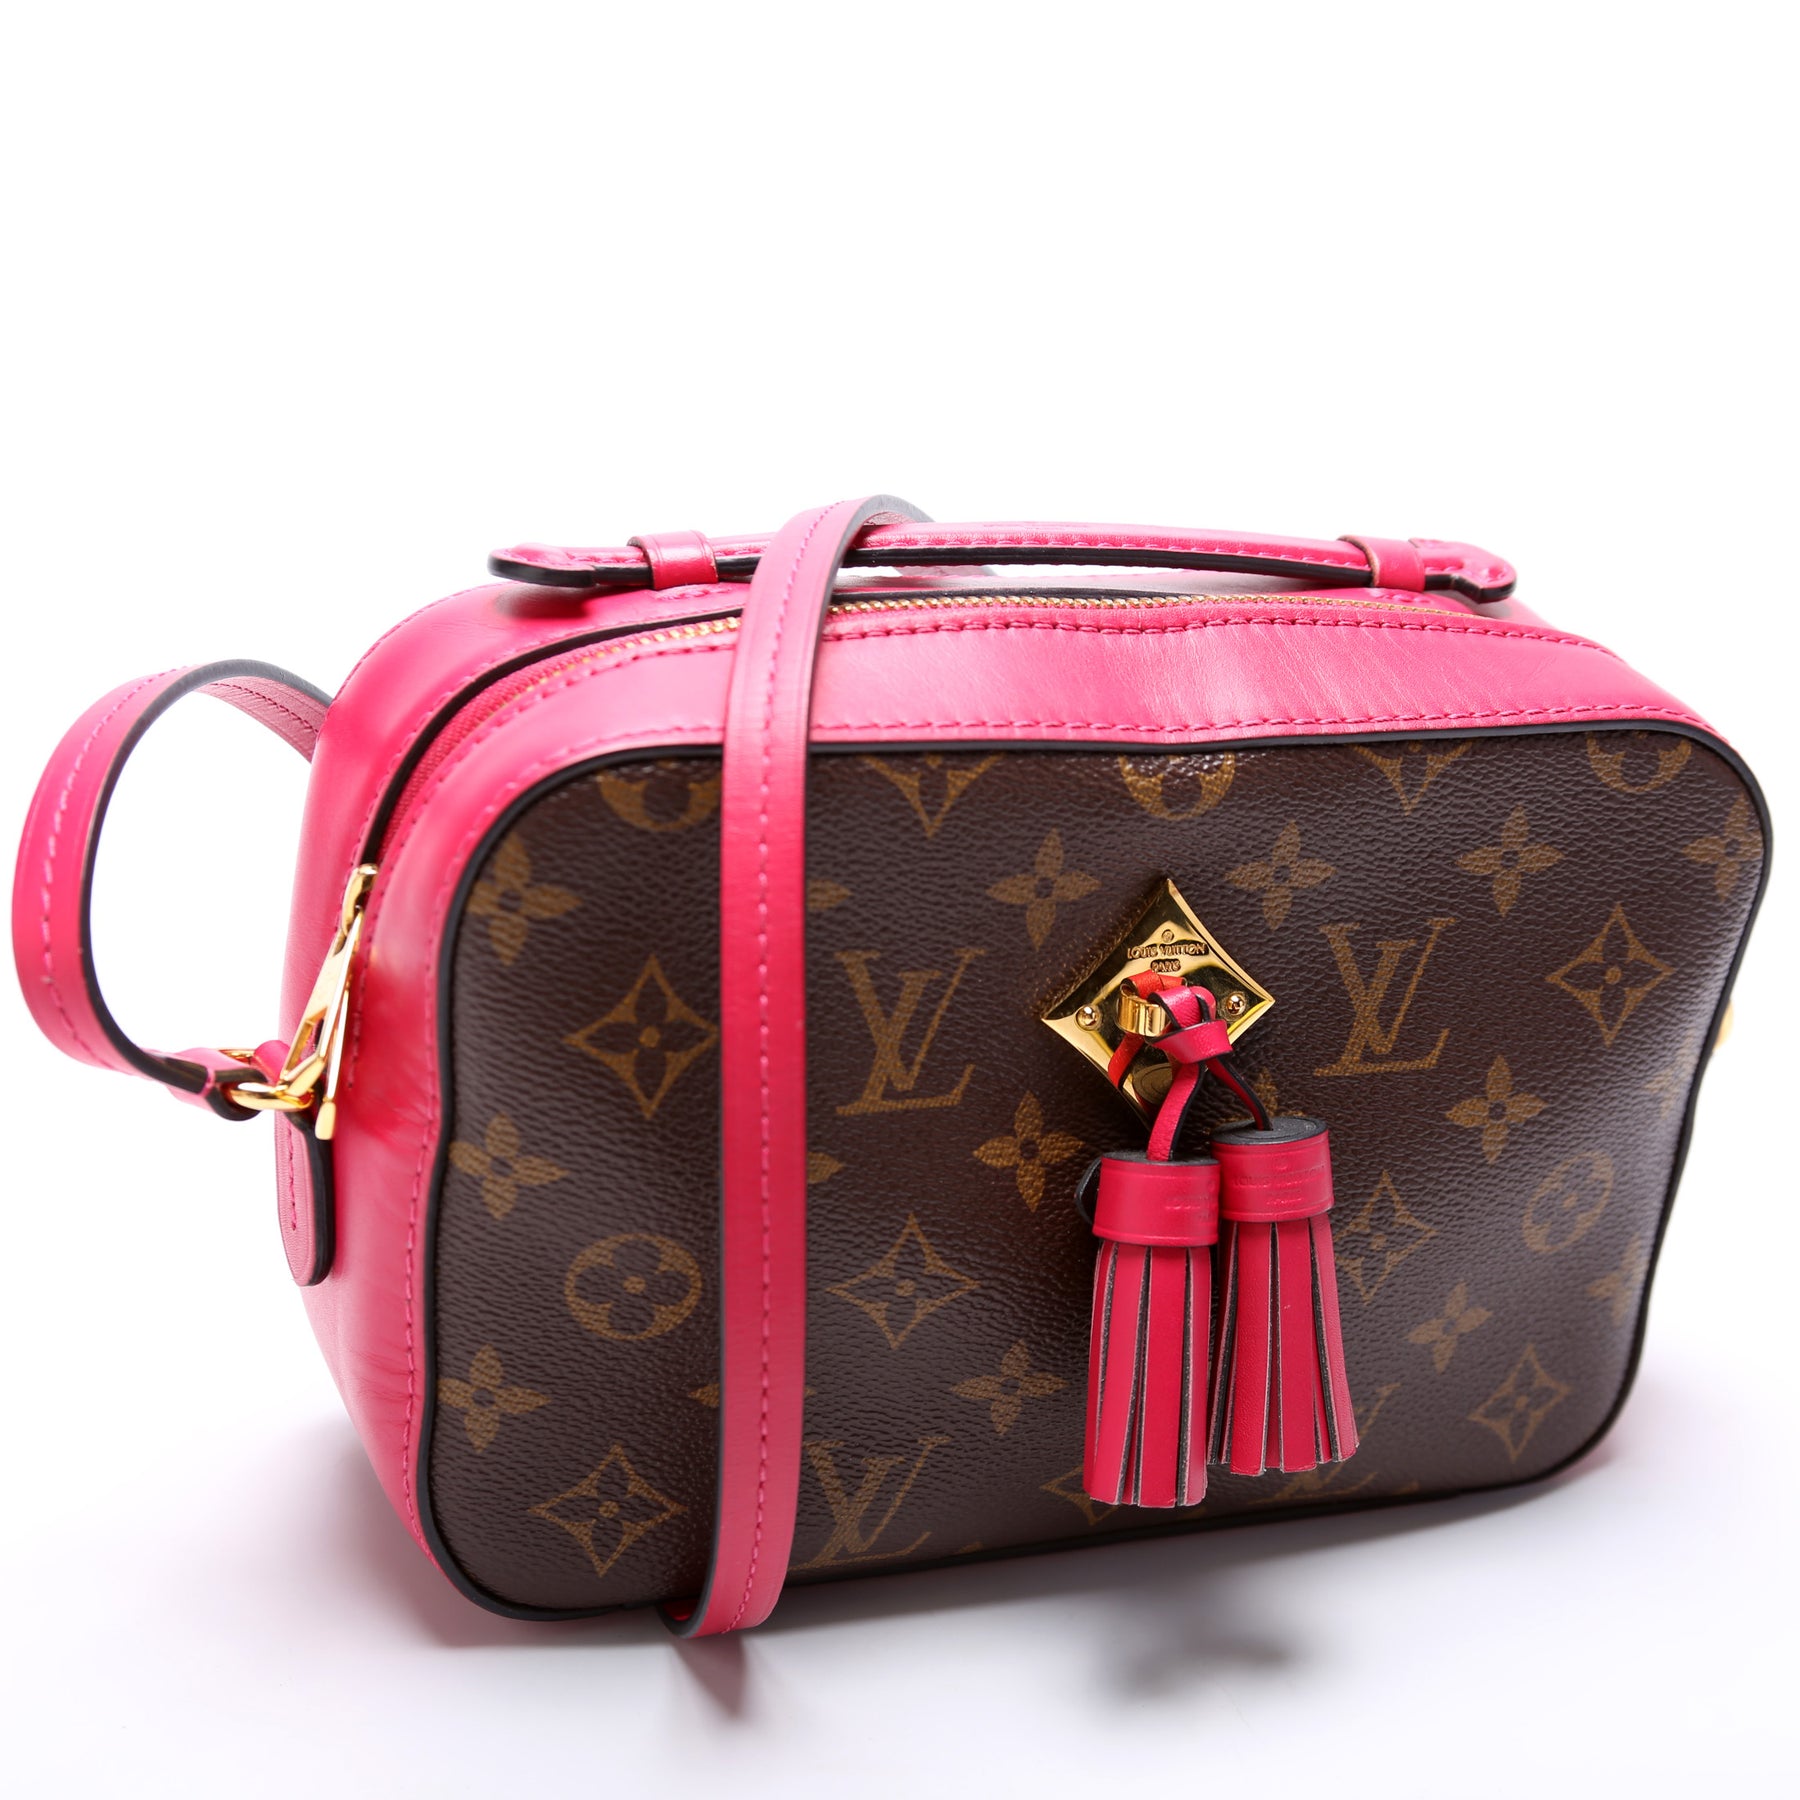 Louis Vuitton Saintonge Bag - 2 For Sale on 1stDibs  saintonge louis  vuitton, lv saintonge bag, saintonge lv bag